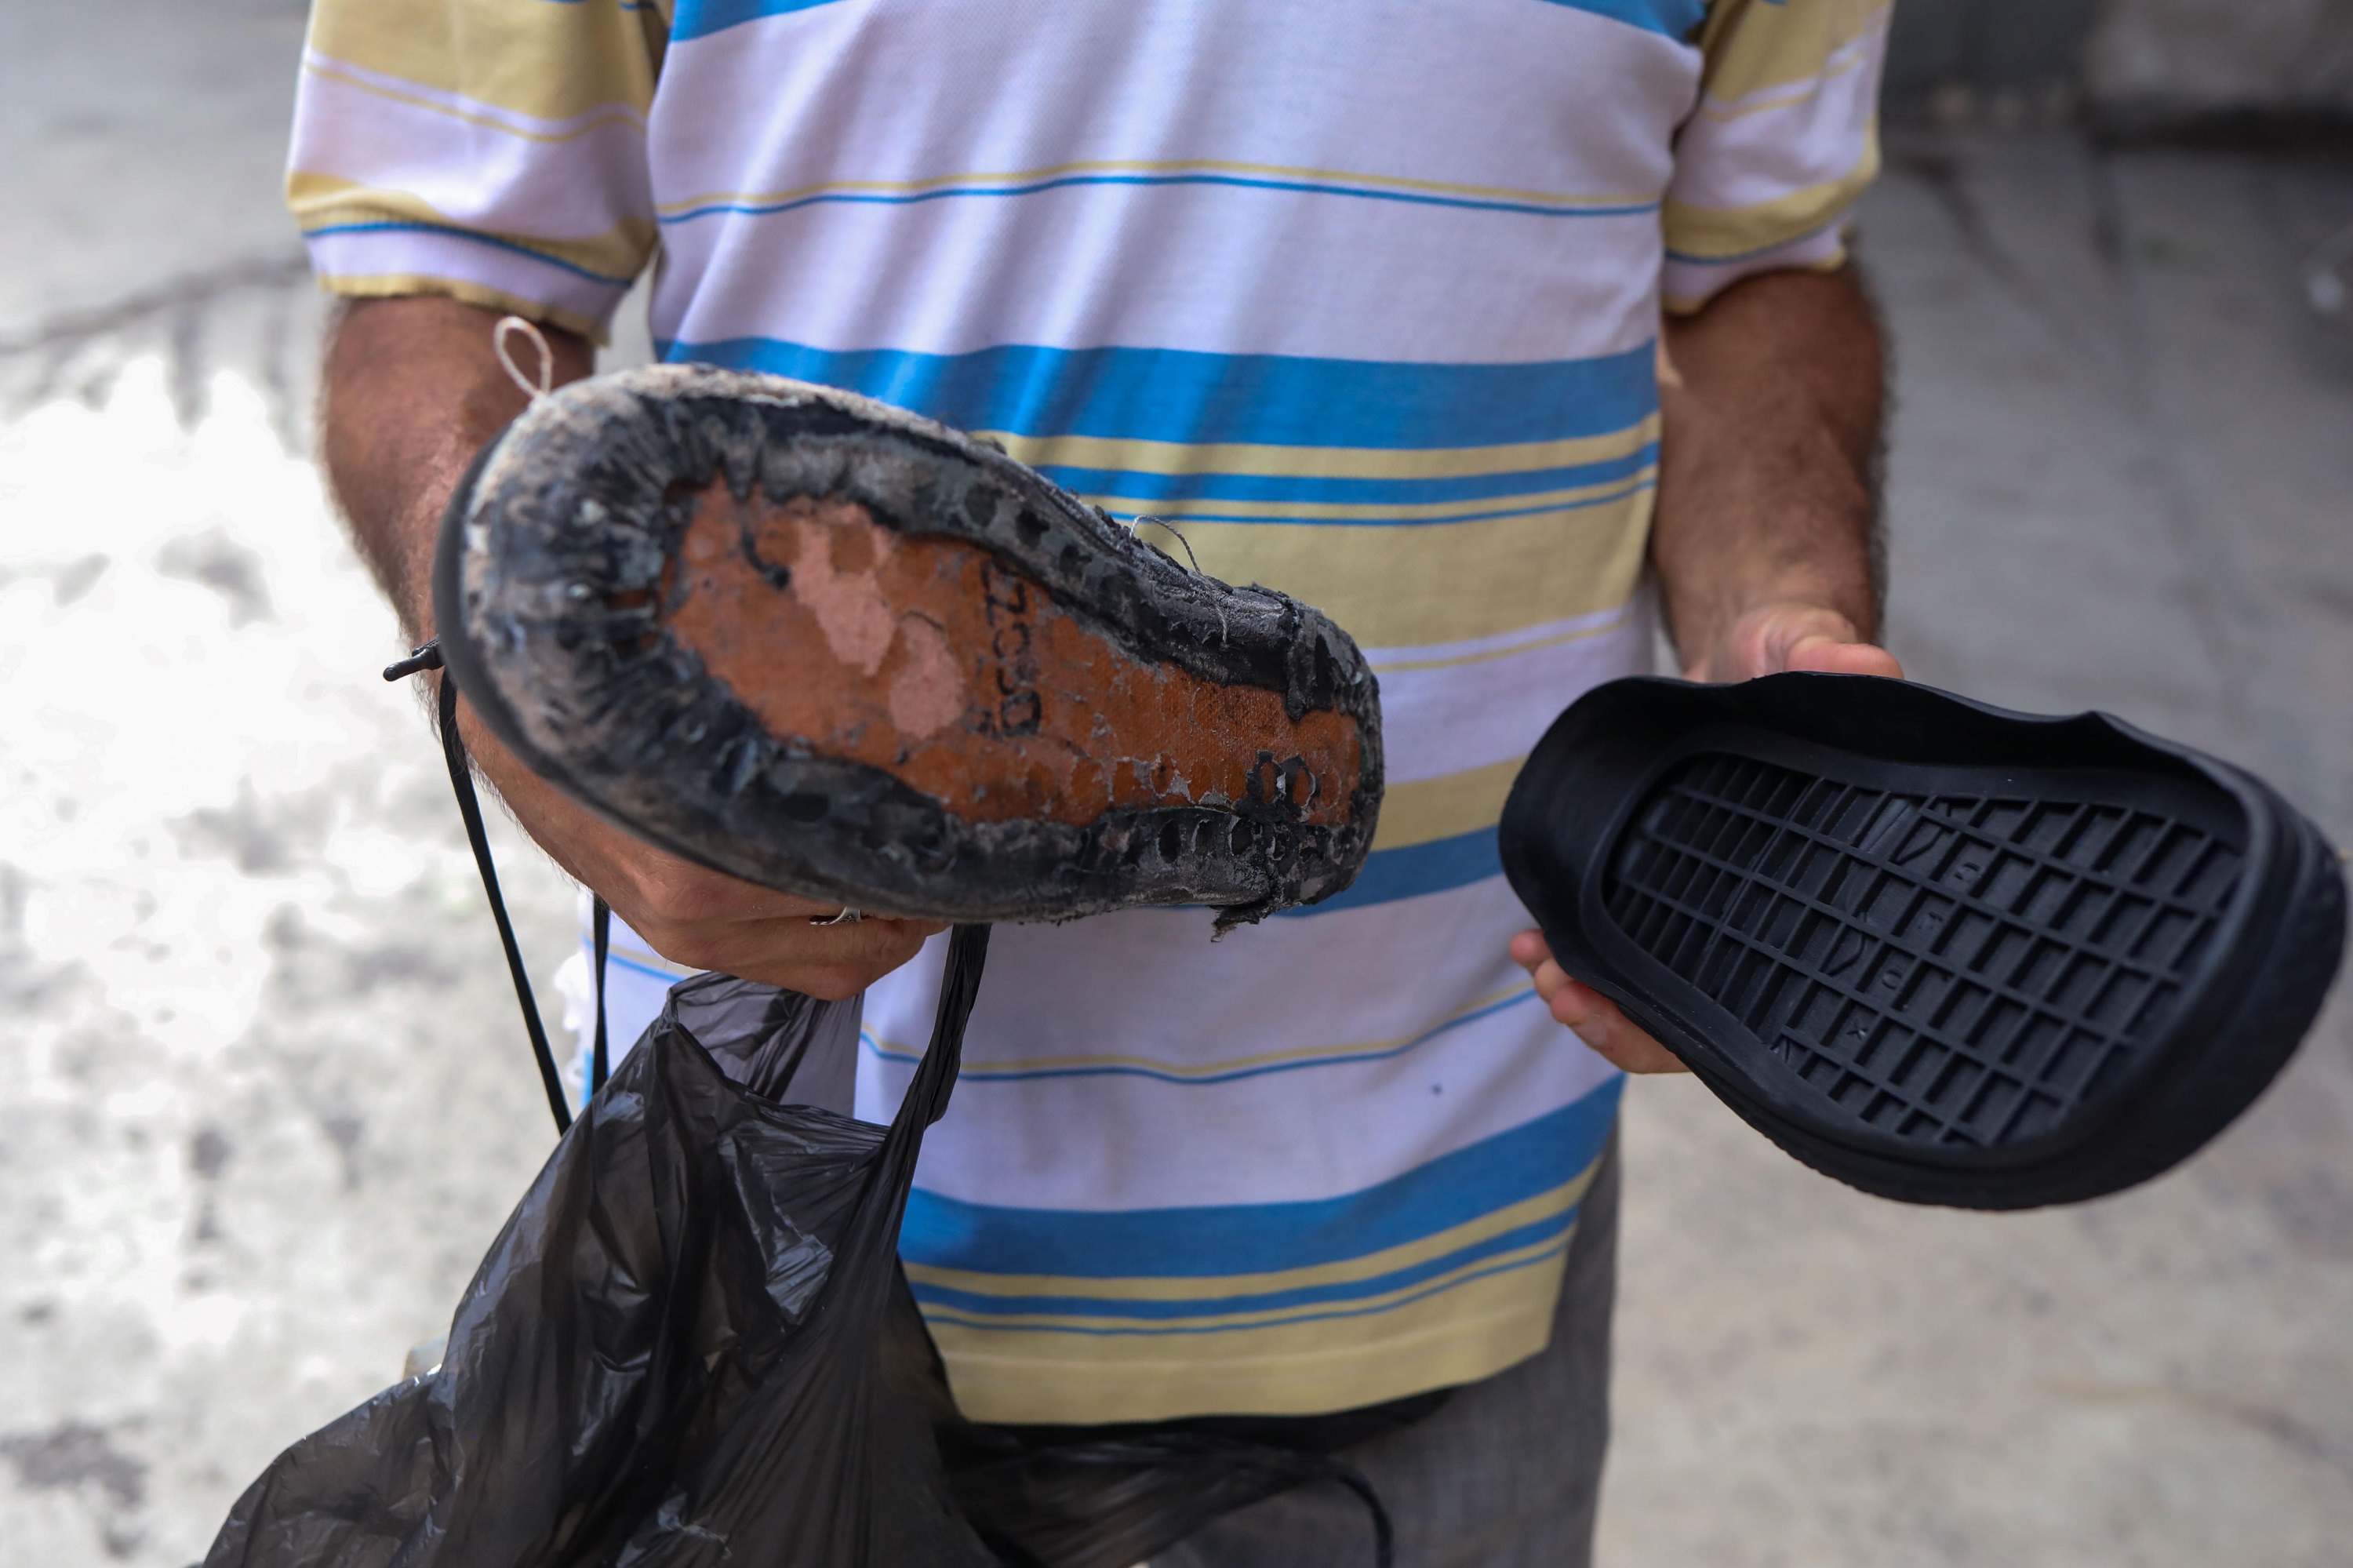 Zapatos rotos y desgastados, una cruda expresión de la crisis en Venezuela (Fotos)